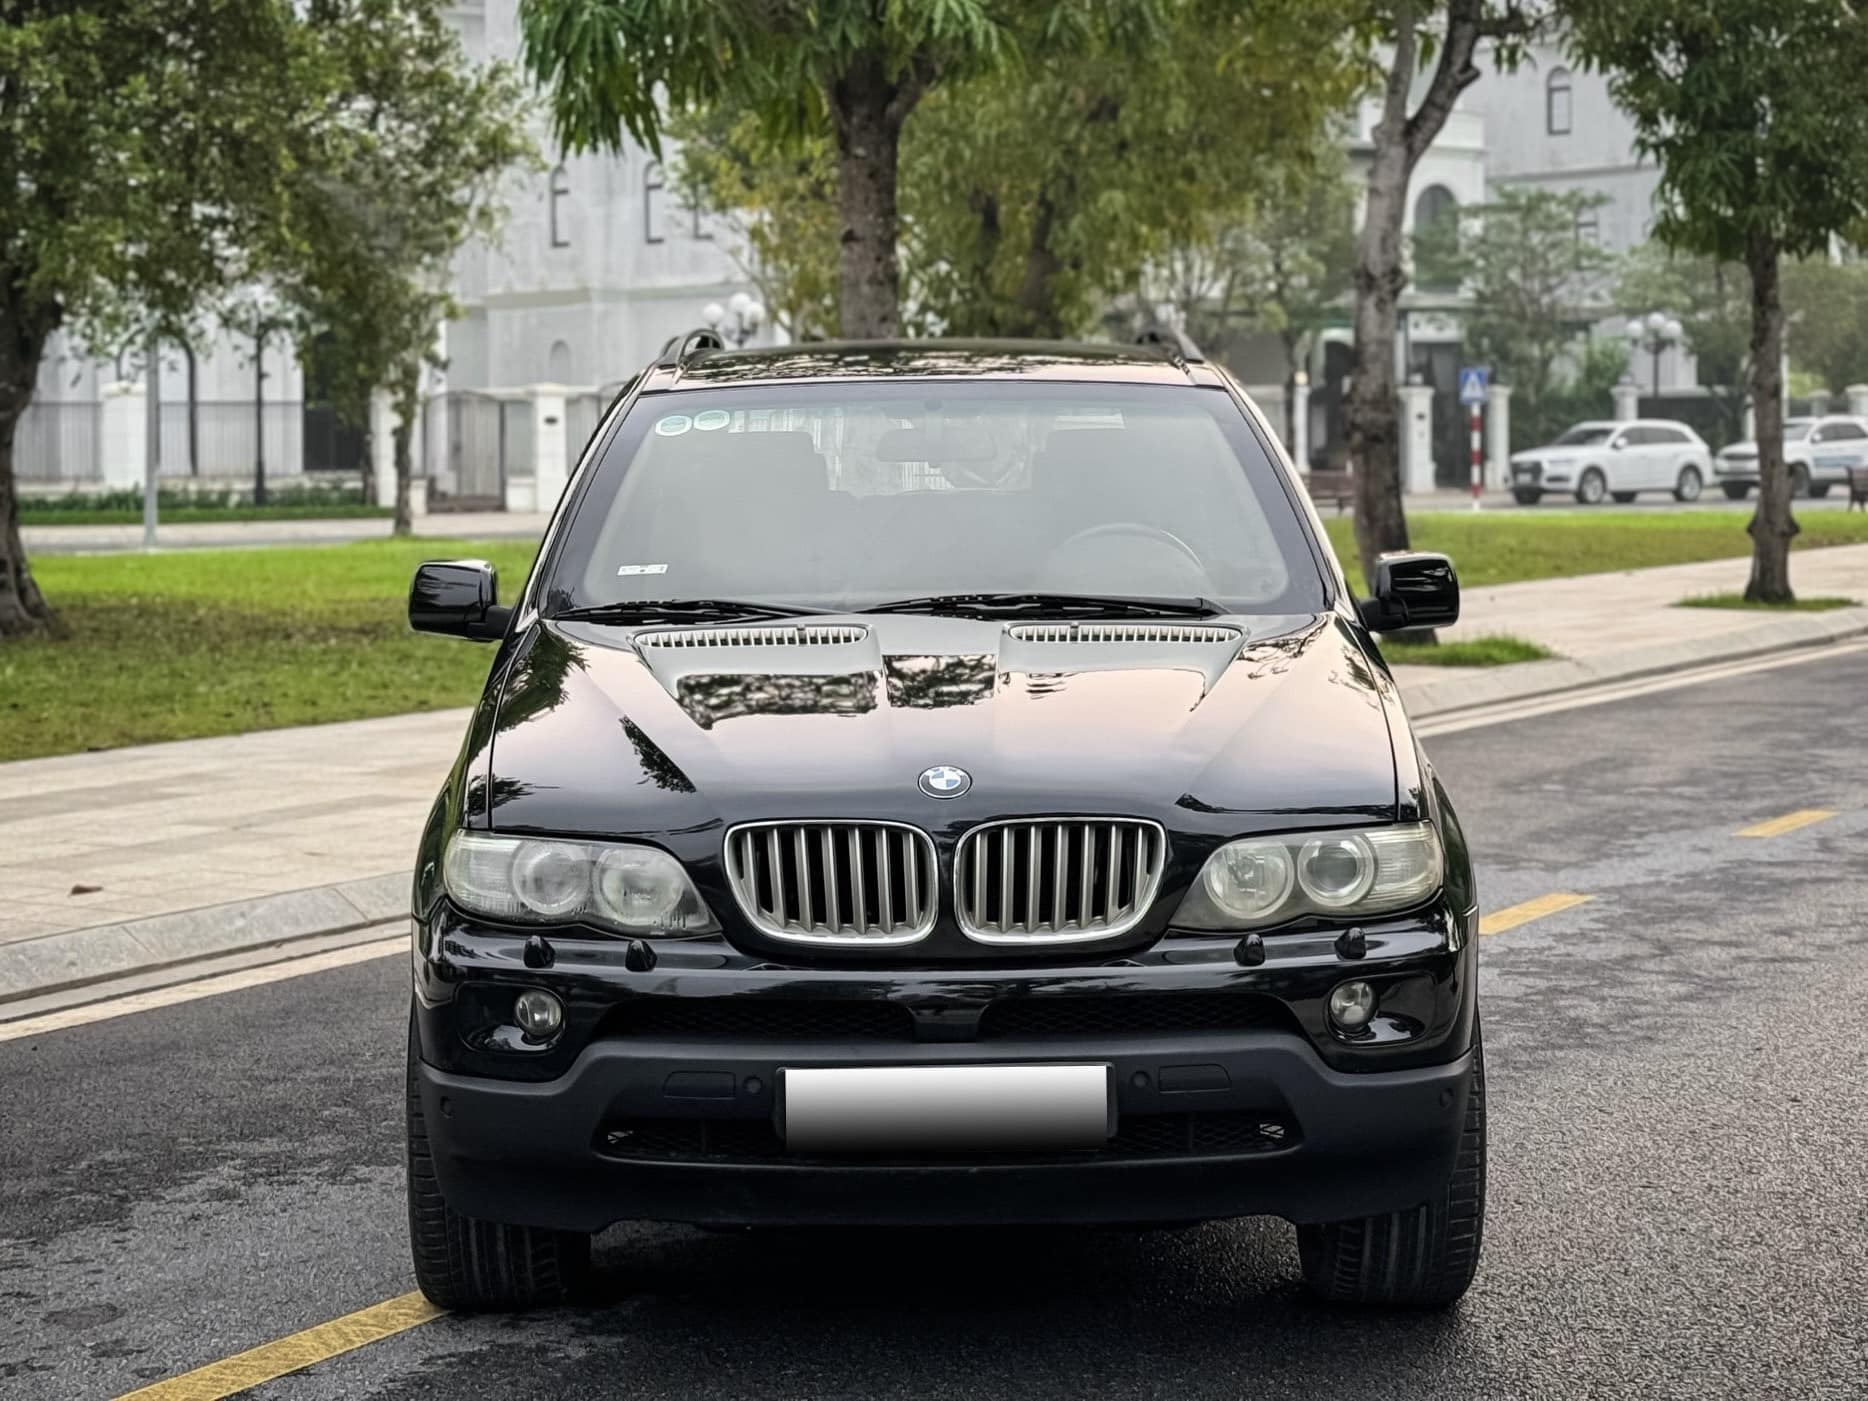 Rao BMW X5 chống đạn giá 600 triệu, người bán chia sẻ: ‘Xe độc nhất Việt Nam, chuyên phục vụ chủ tịch’- Ảnh 3.